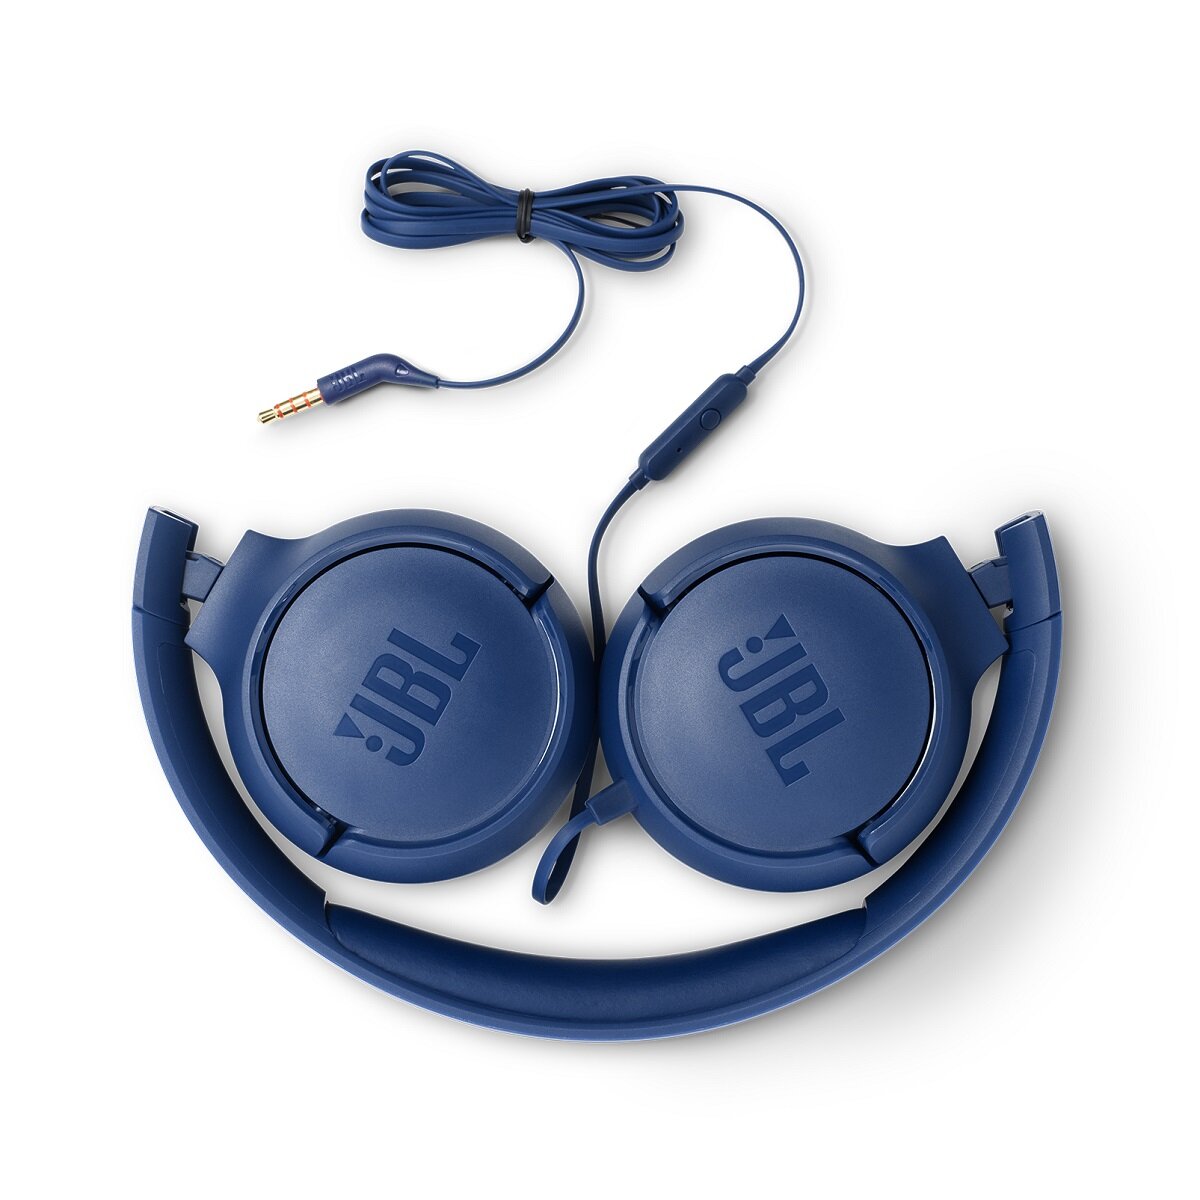 Słuchawki JBL TUNE500 niebieskie widok na złożone słuchawki, widoczny przewód jack 3,5mm